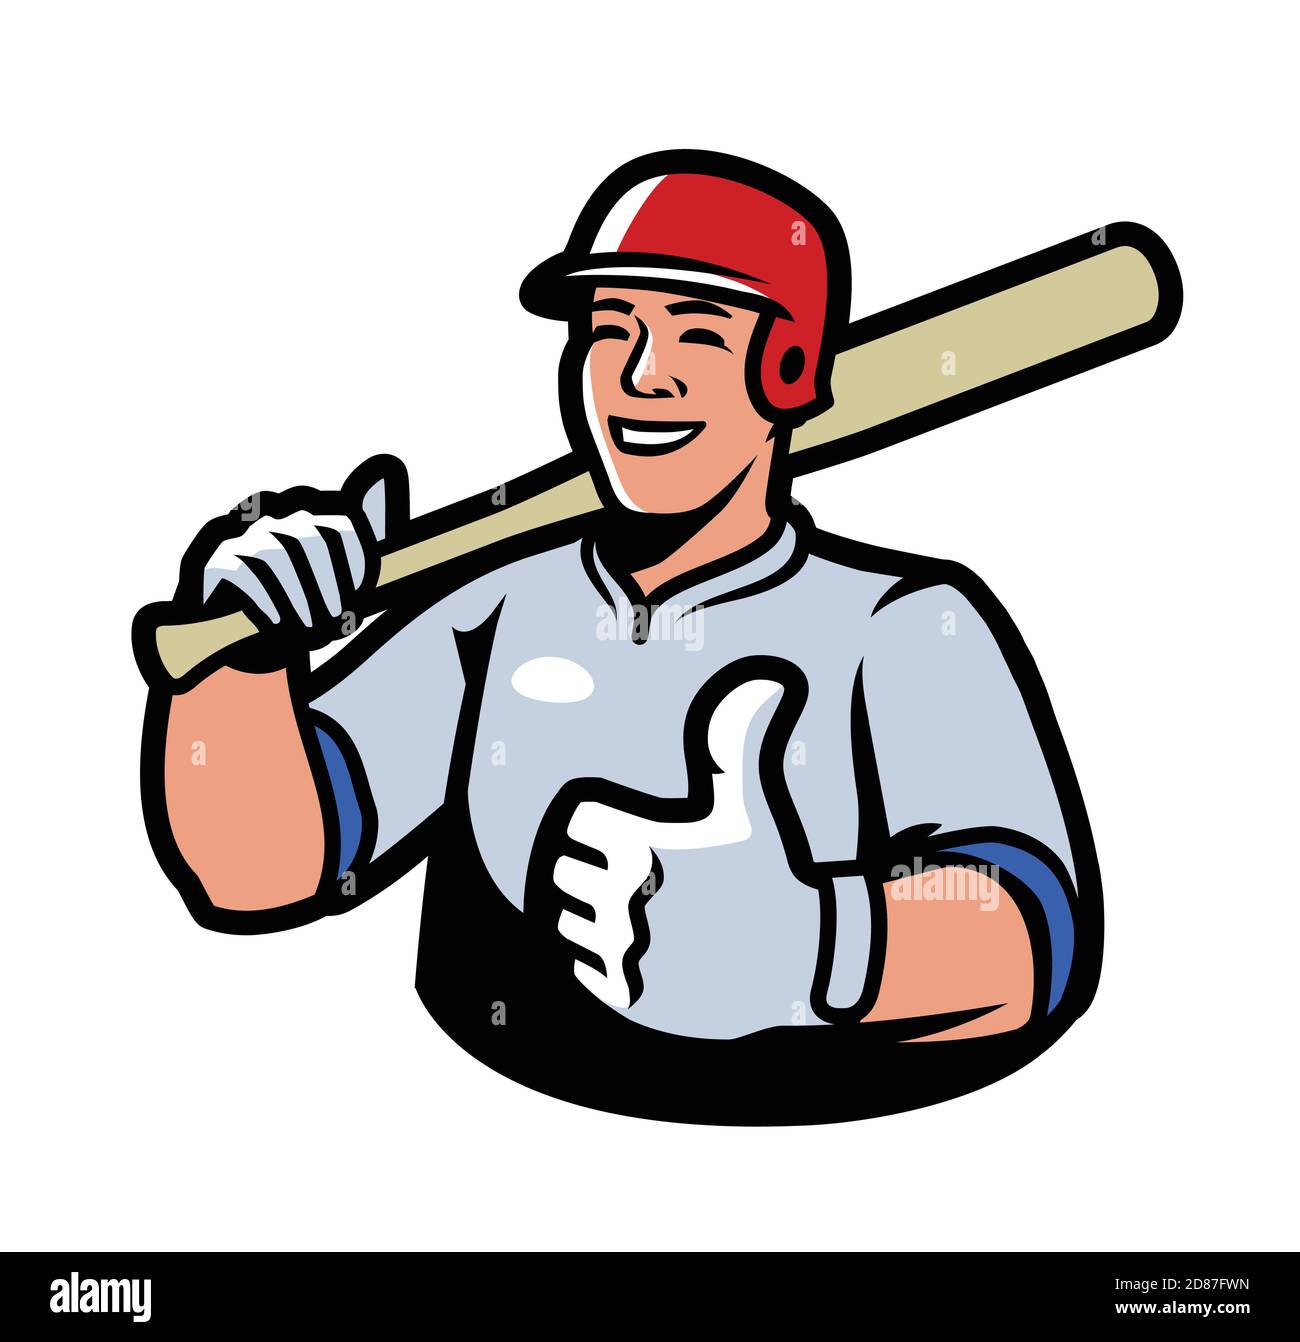 Baseball-Spieler-Symbol. Vektorgrafik Sport Stock Vektor